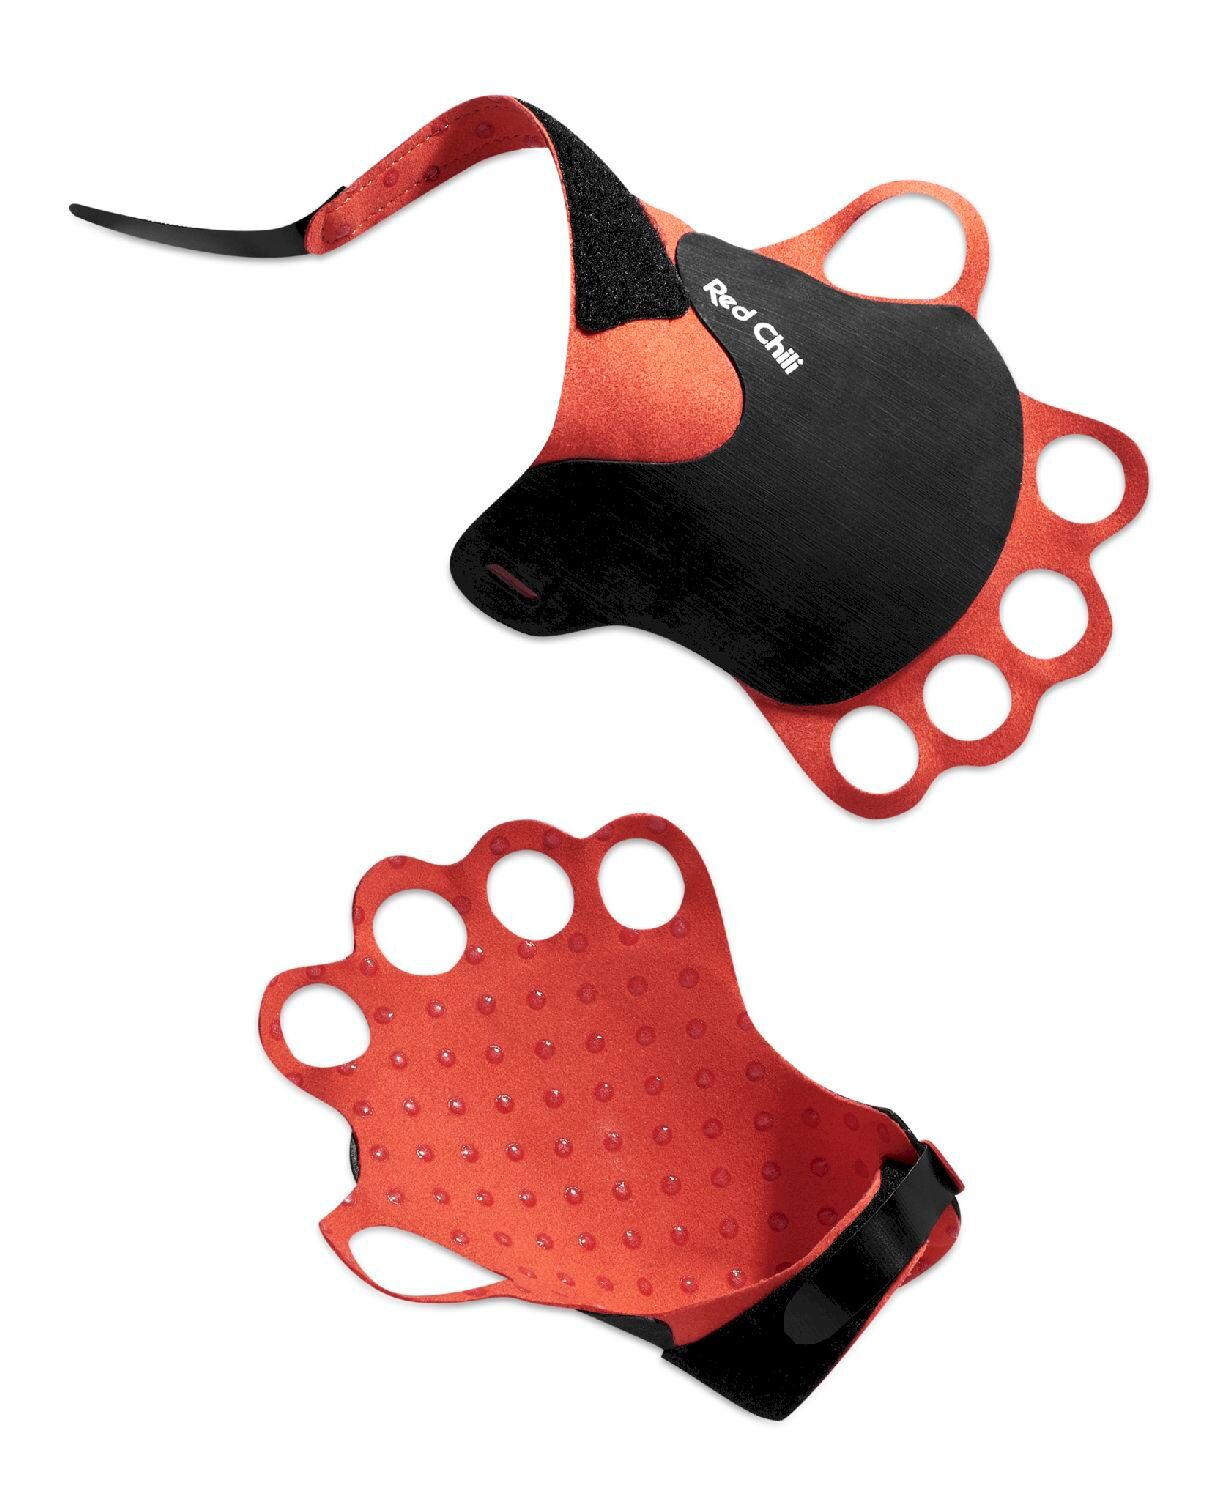 Red Chili Jamrock - Climbing gloves